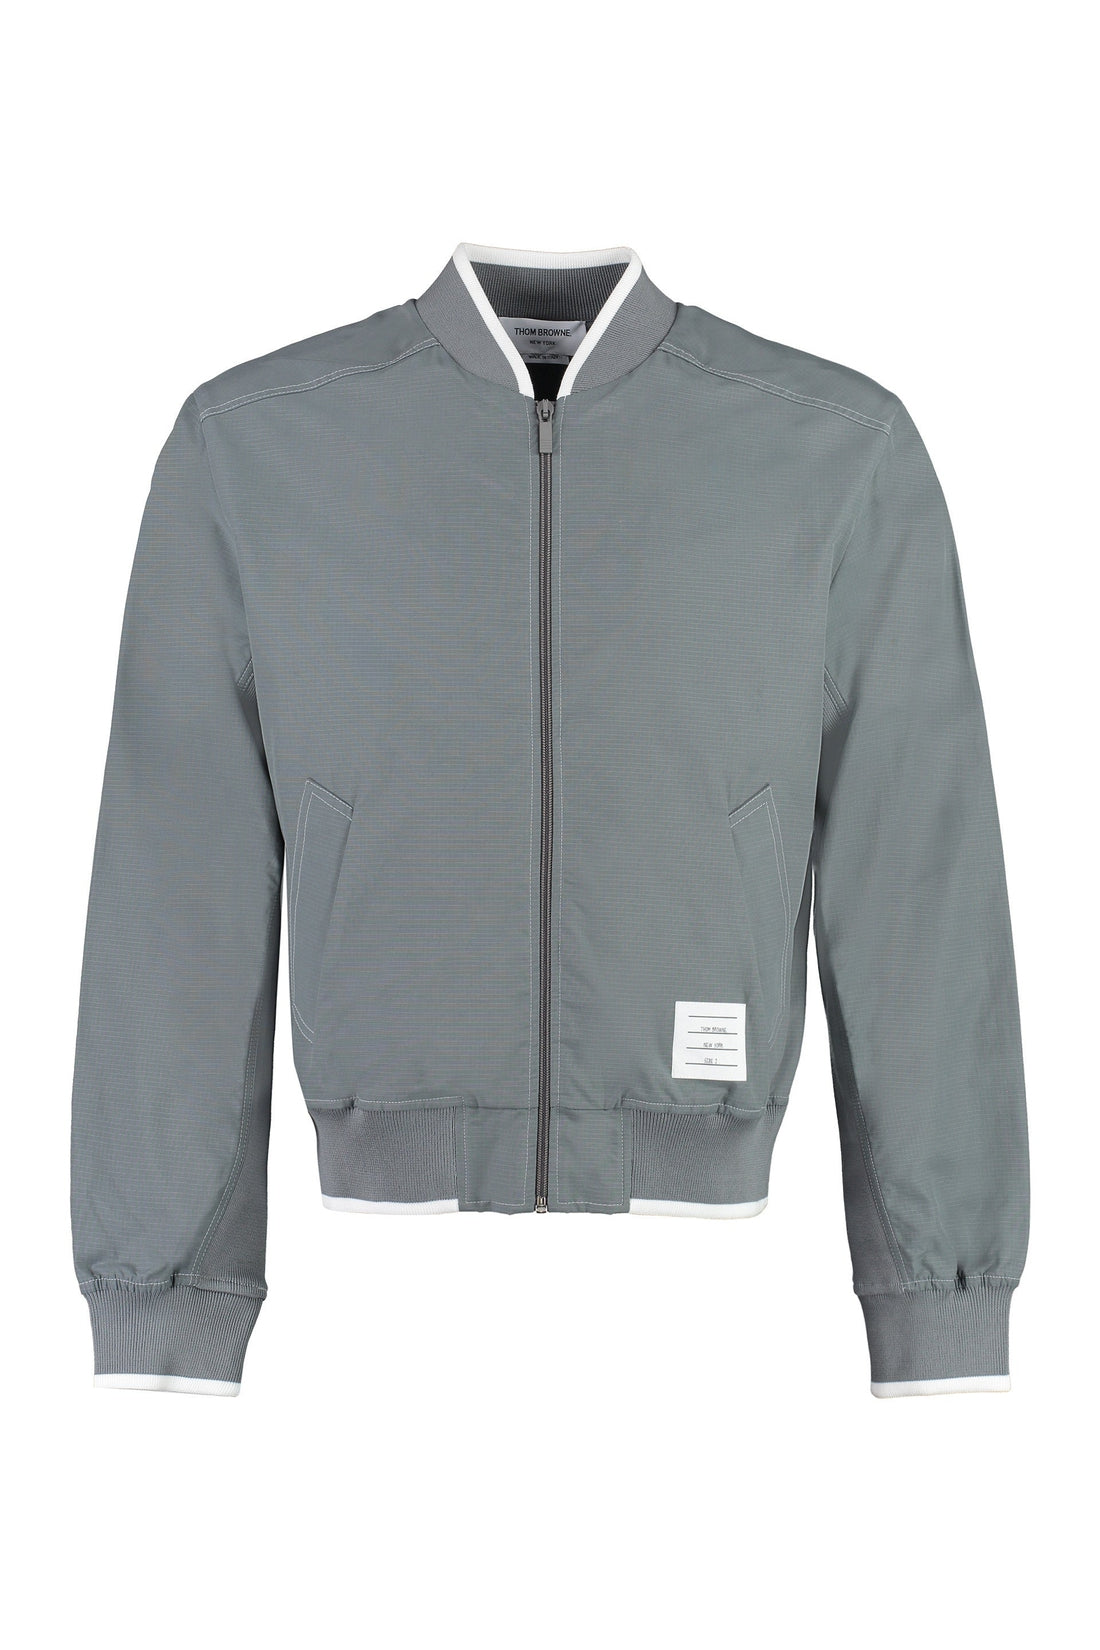 Thom Browne-OUTLET-SALE-Cotton blend blazer-ARCHIVIST